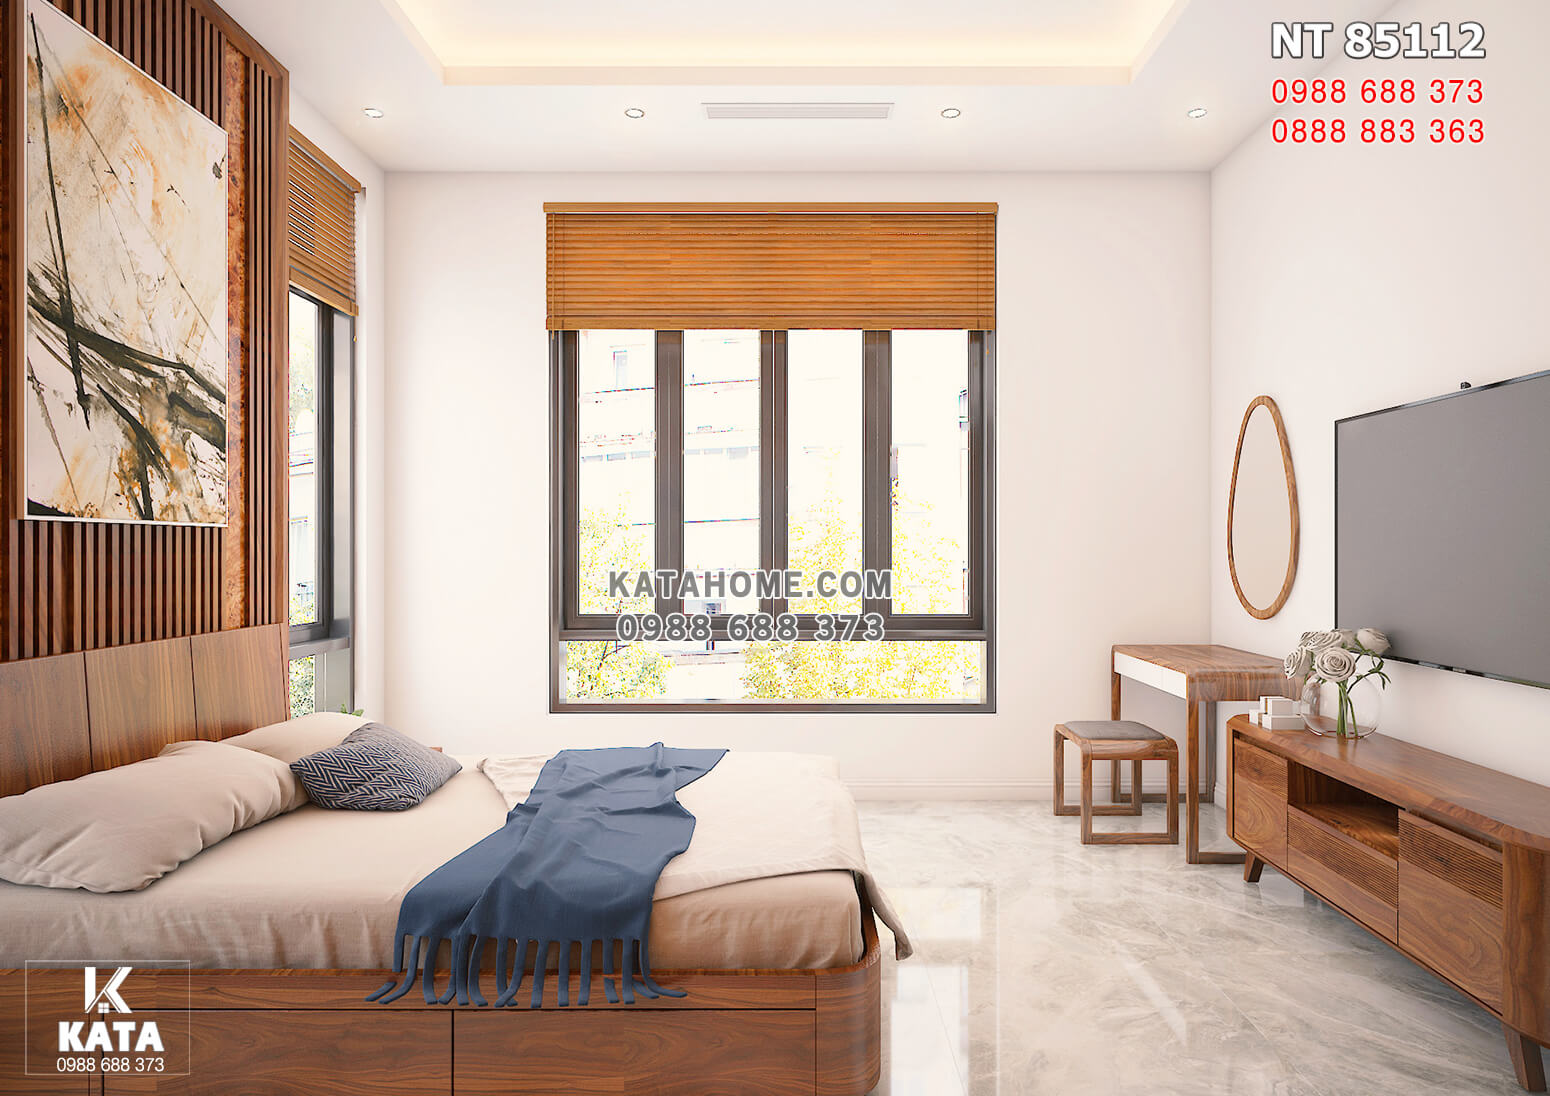 Hình ảnh: Không gian phòng ngủ 1 với các món đồ nội thất gỗ óc chó cao cấp